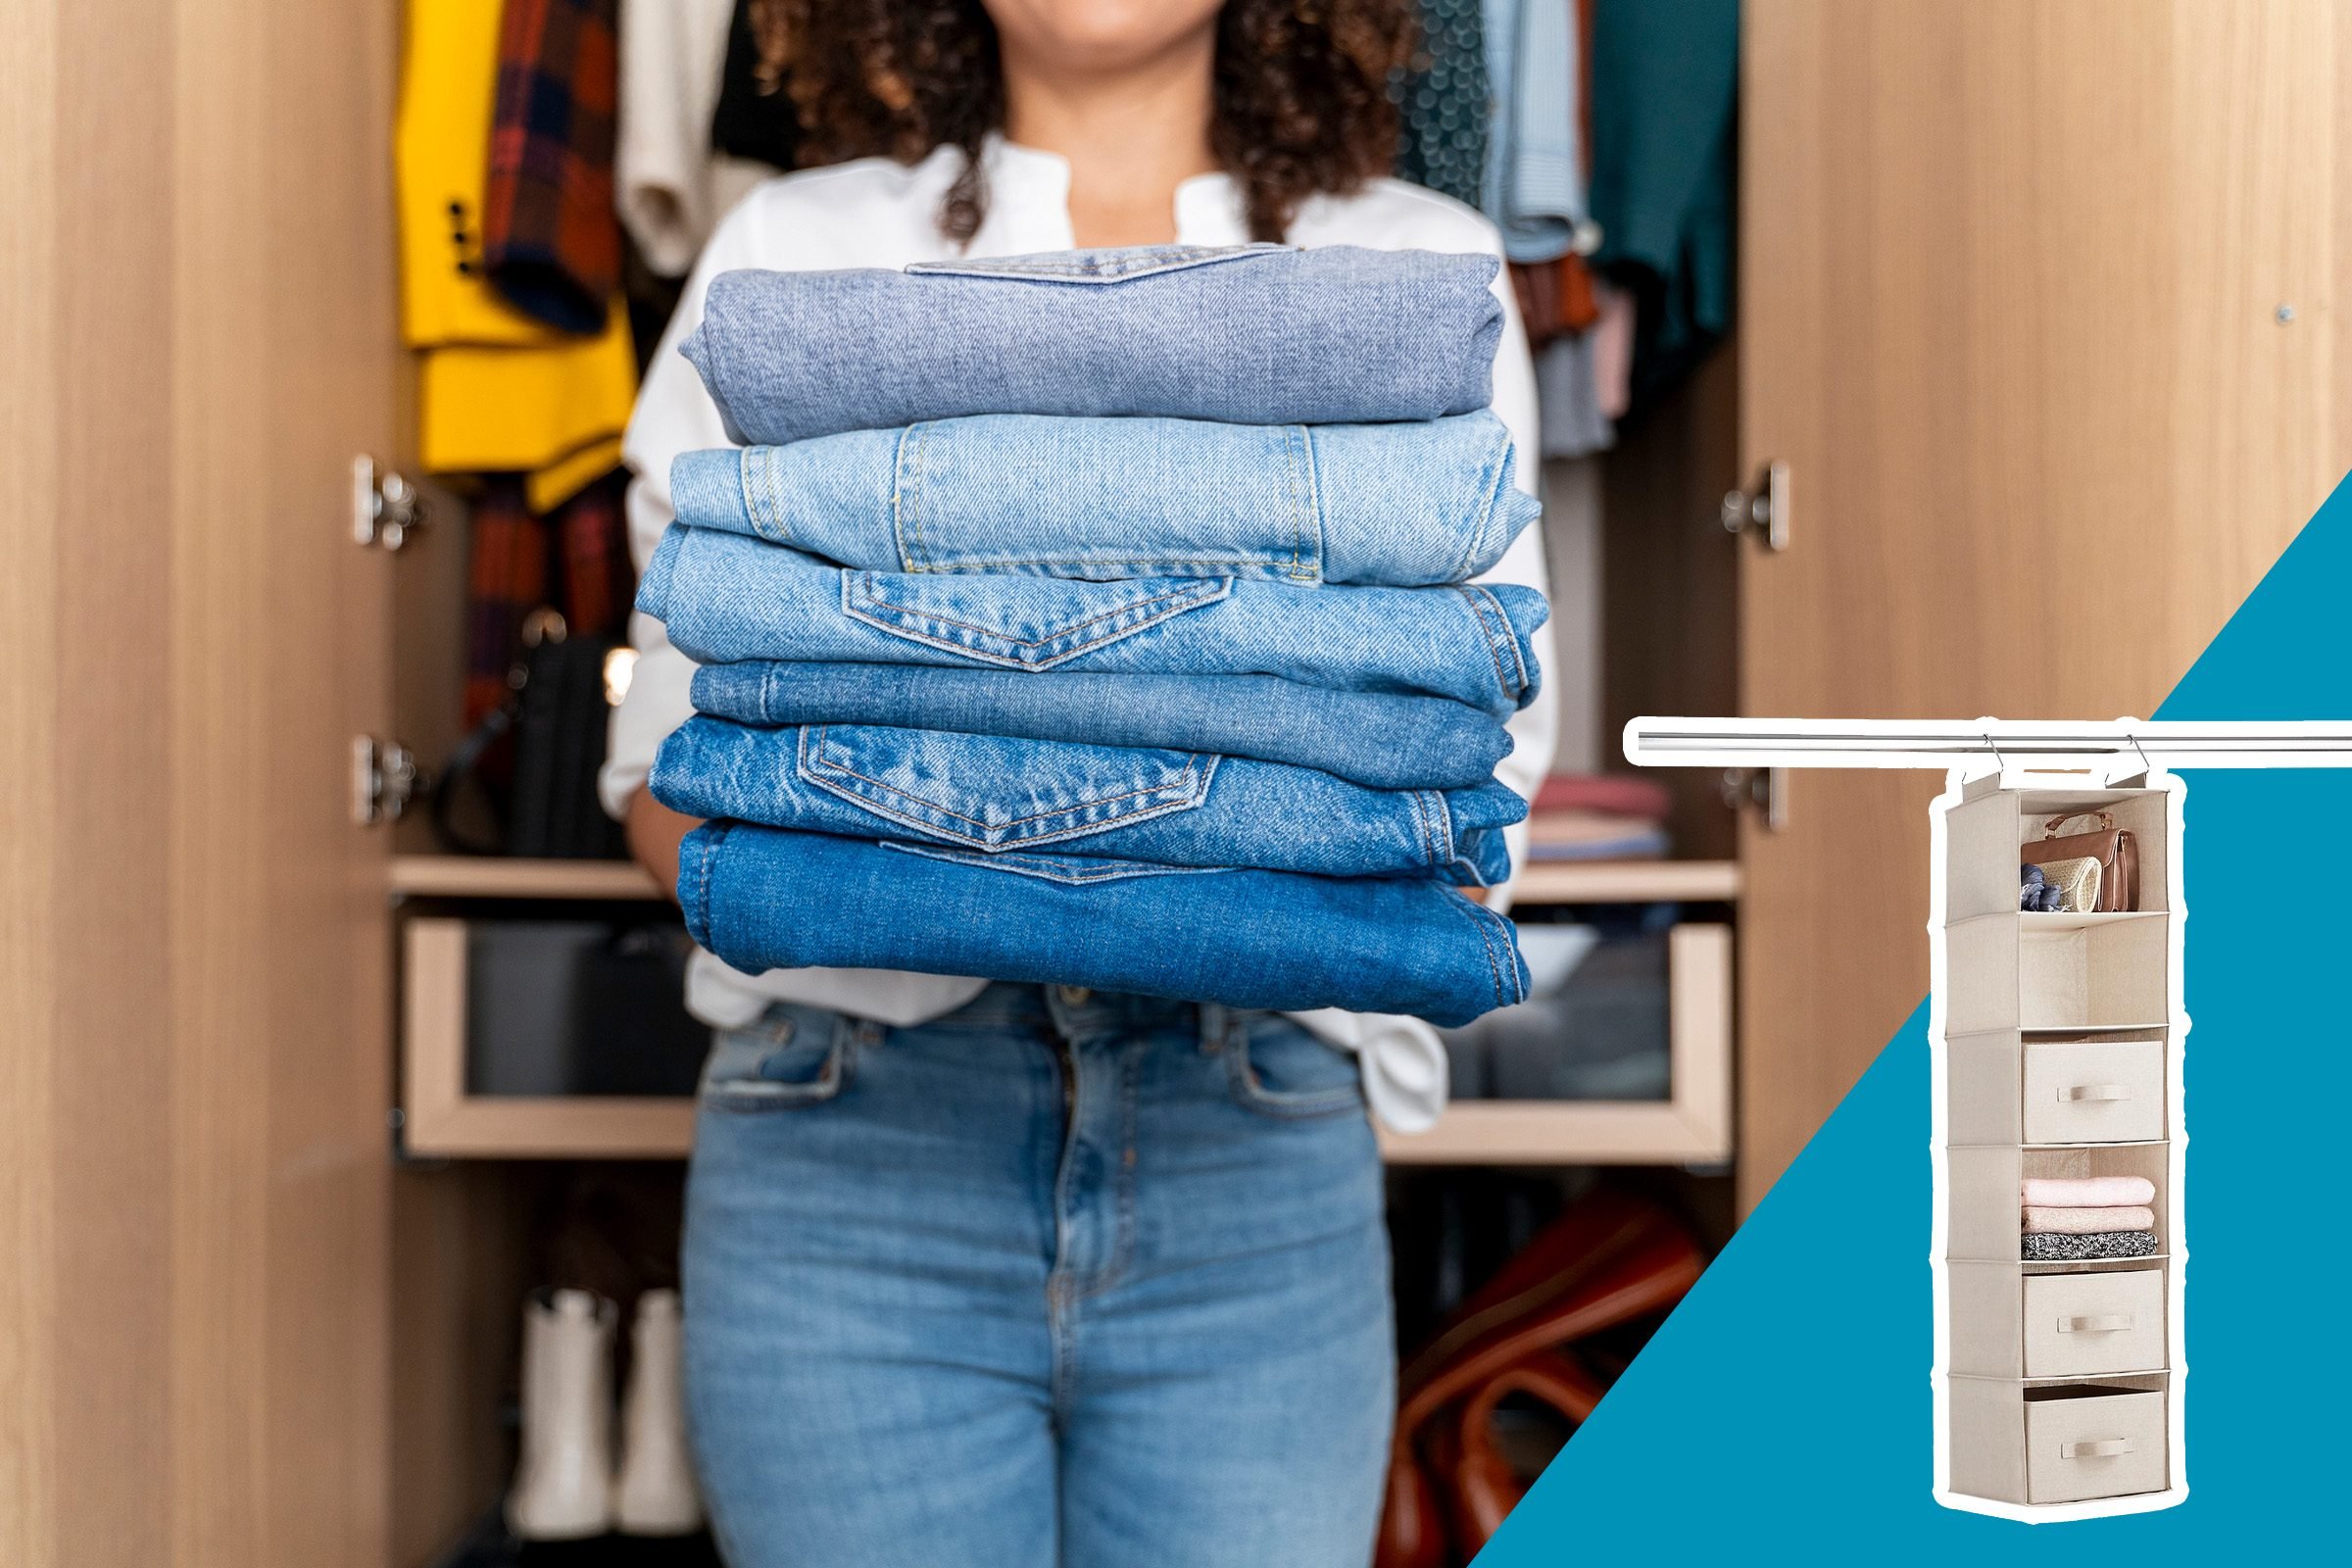 15 mẹo giúp tủ quần áo của bạn luôn gọn gàng, ngăn nắp và thời trang - Ảnh 5.